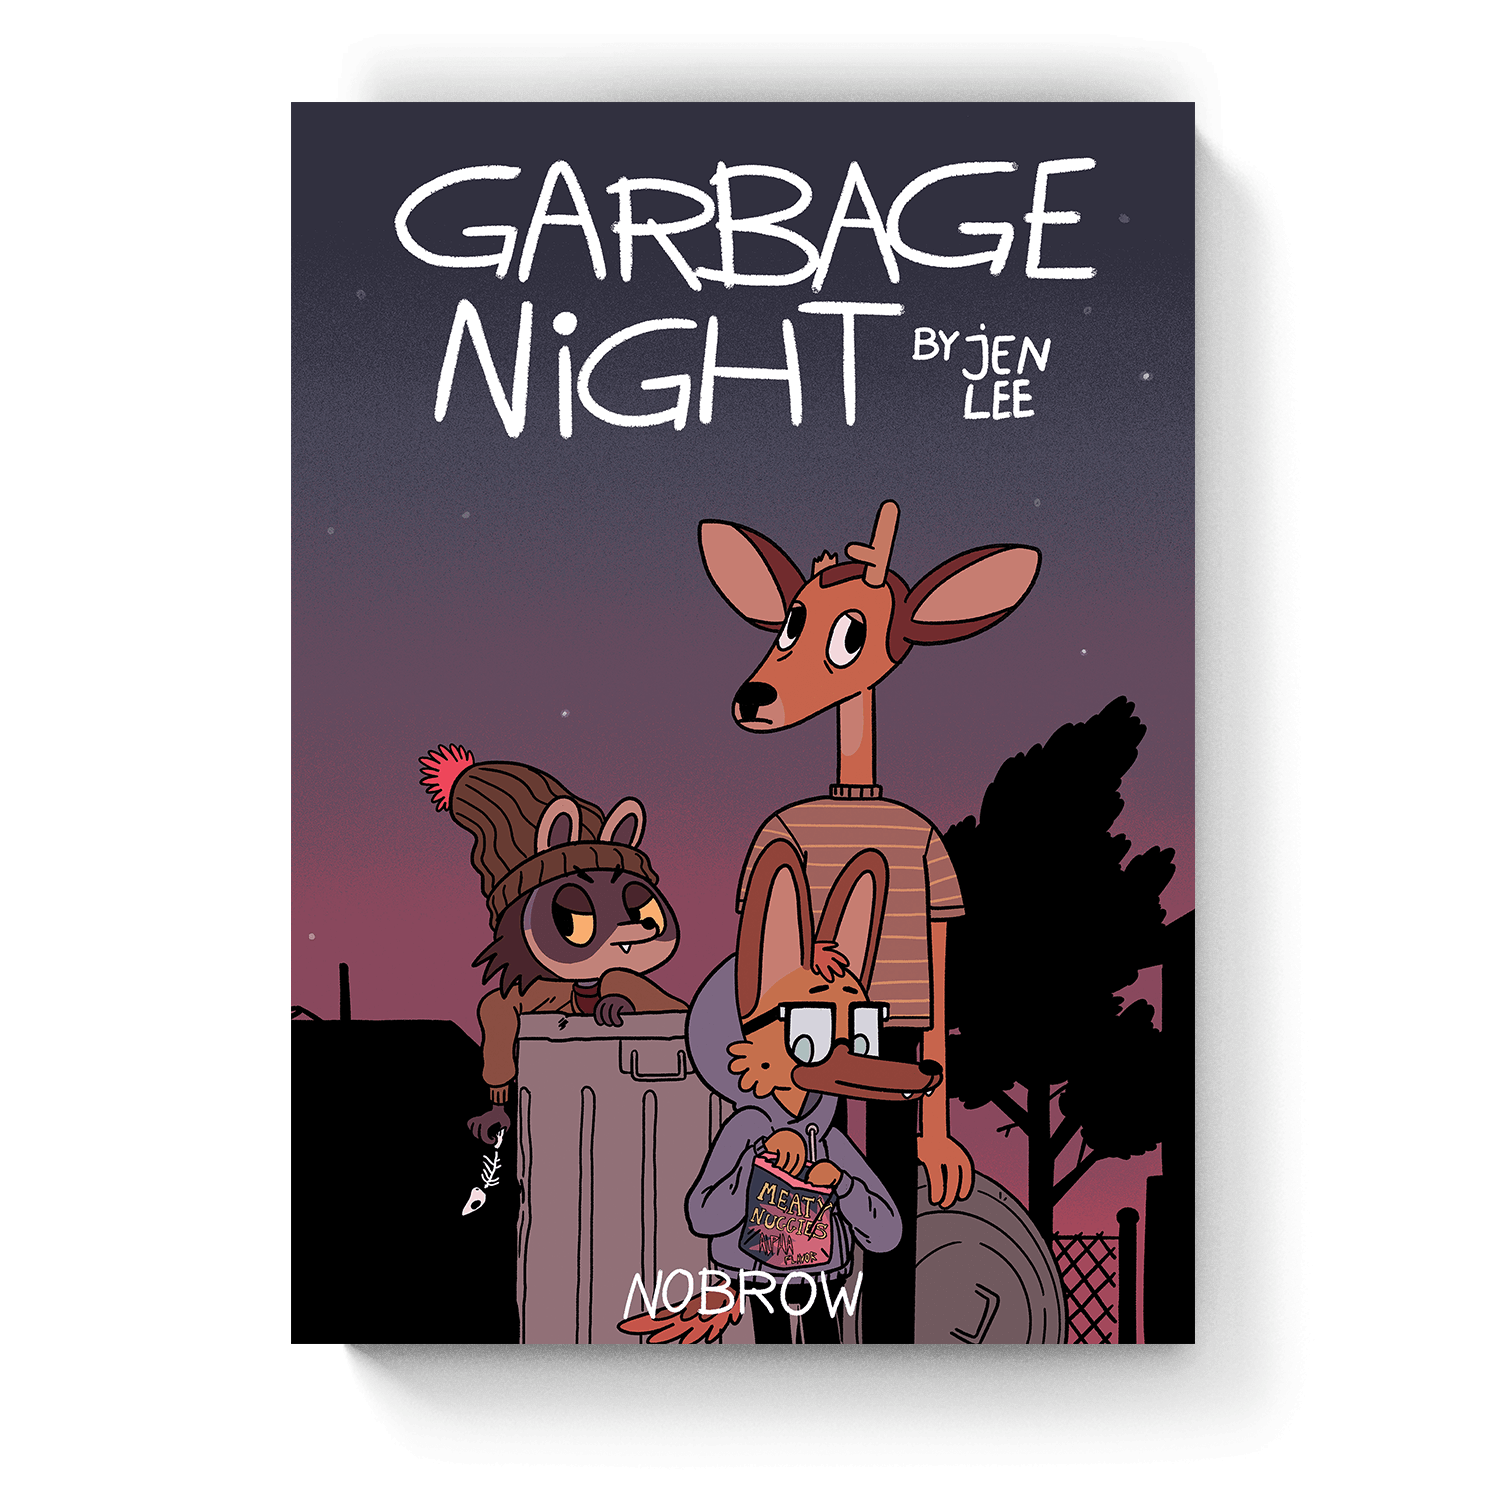 Garbage Night